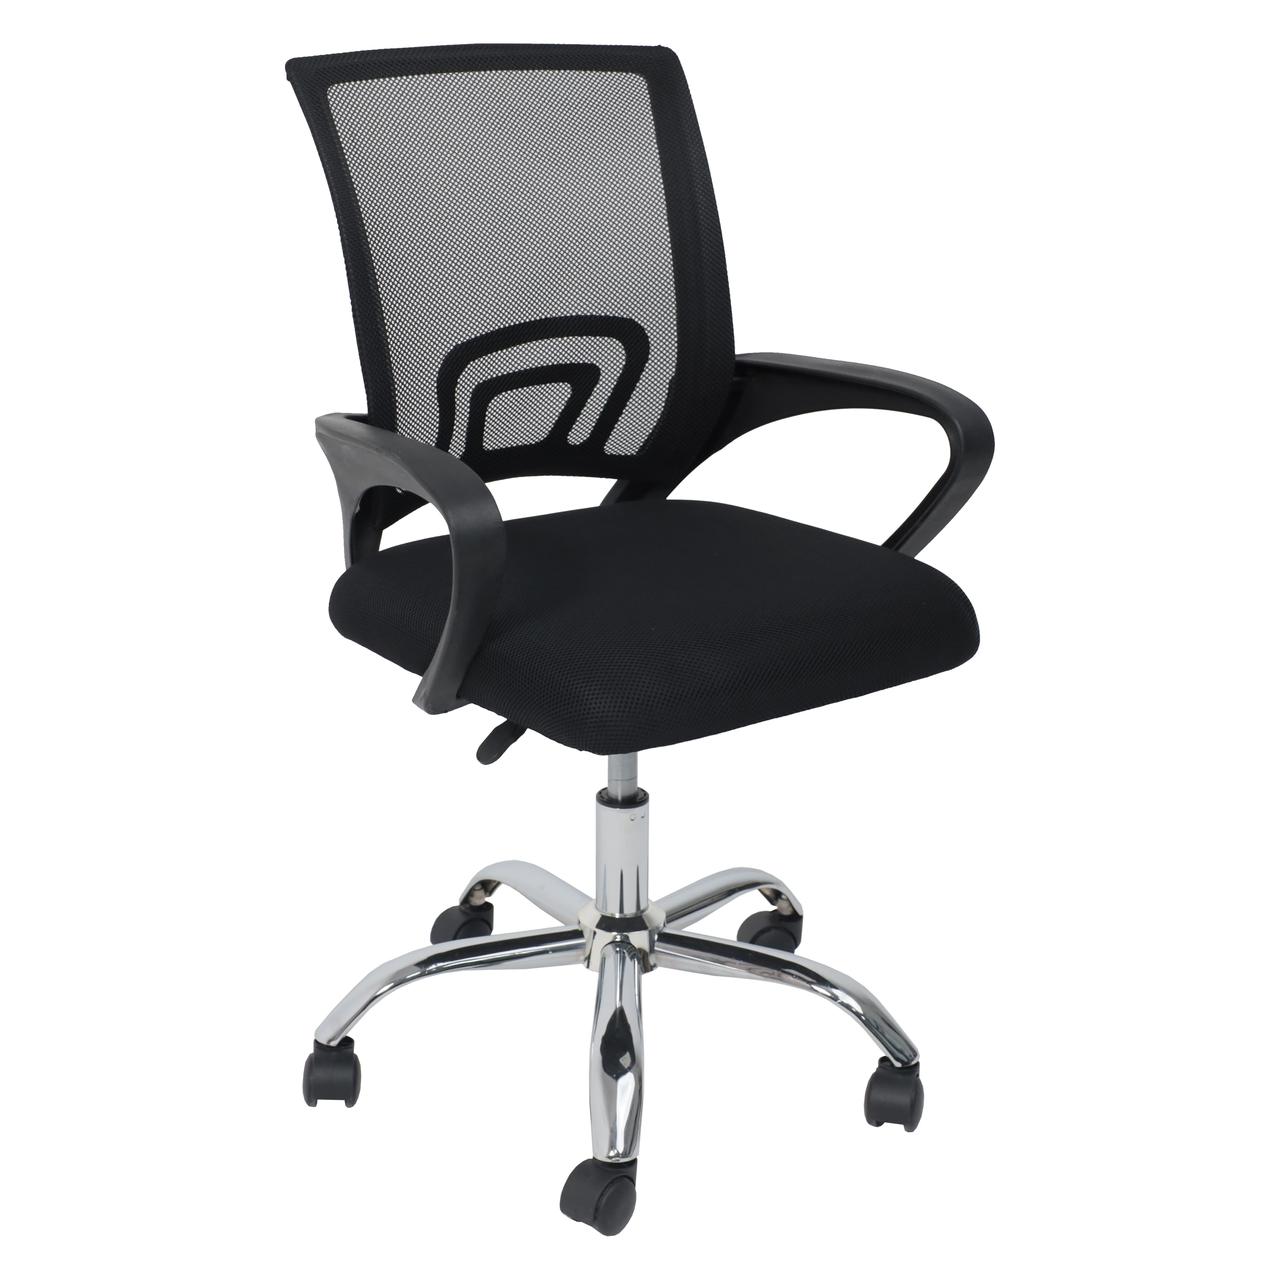 Кресло поворотное RENE, chrome, ткань/сетка, чёрный+сетка-черная